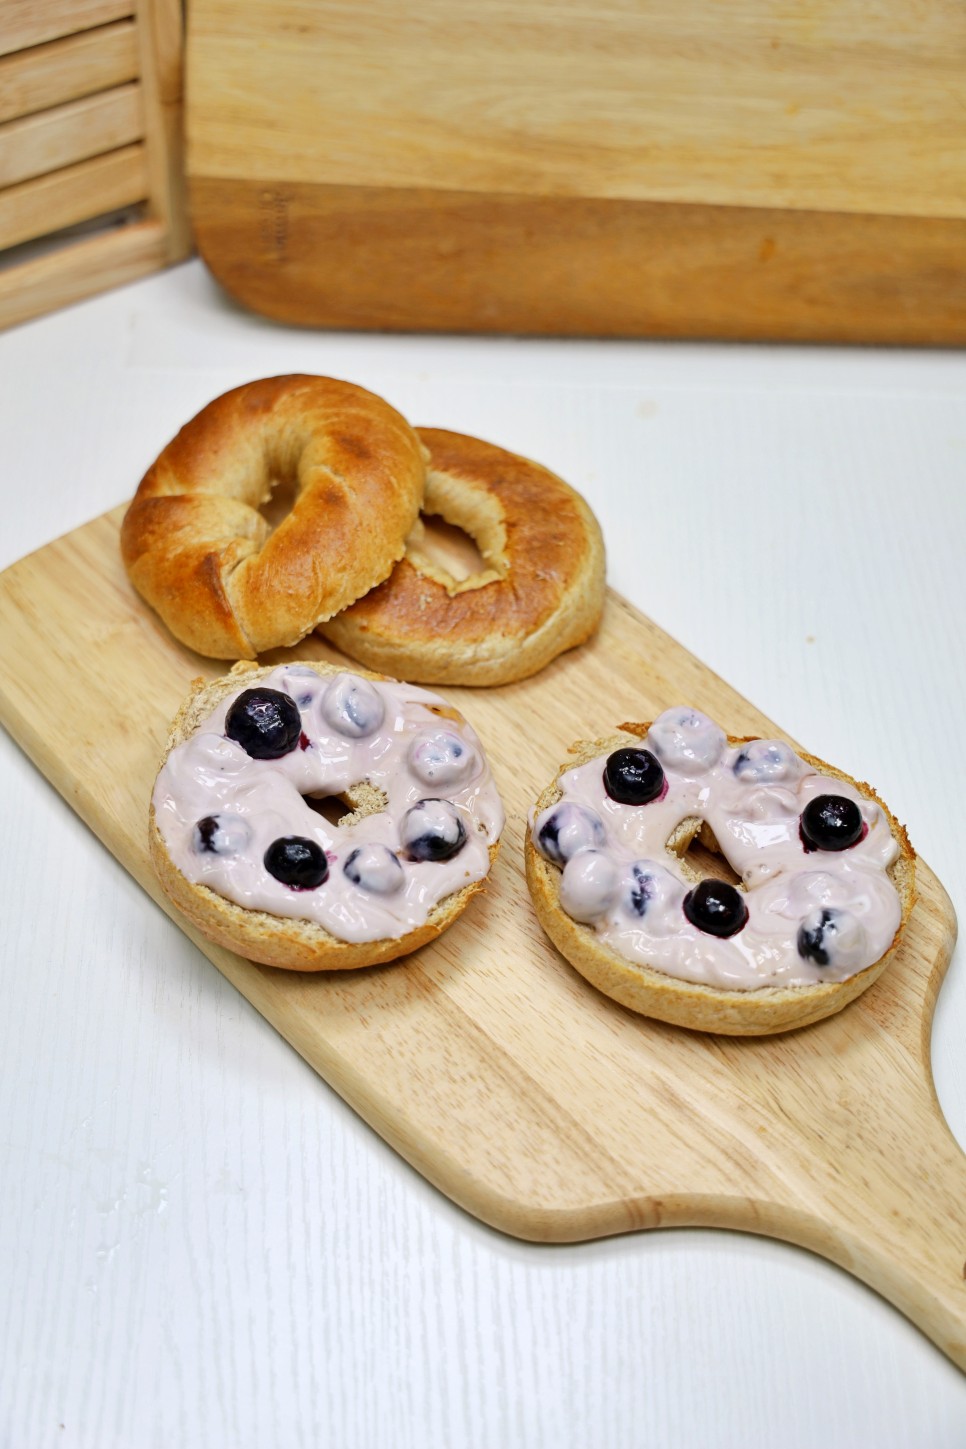 베이글 맛있게 먹는법 간단한 아침메뉴 블루베리 끼리 크림치즈 베이글